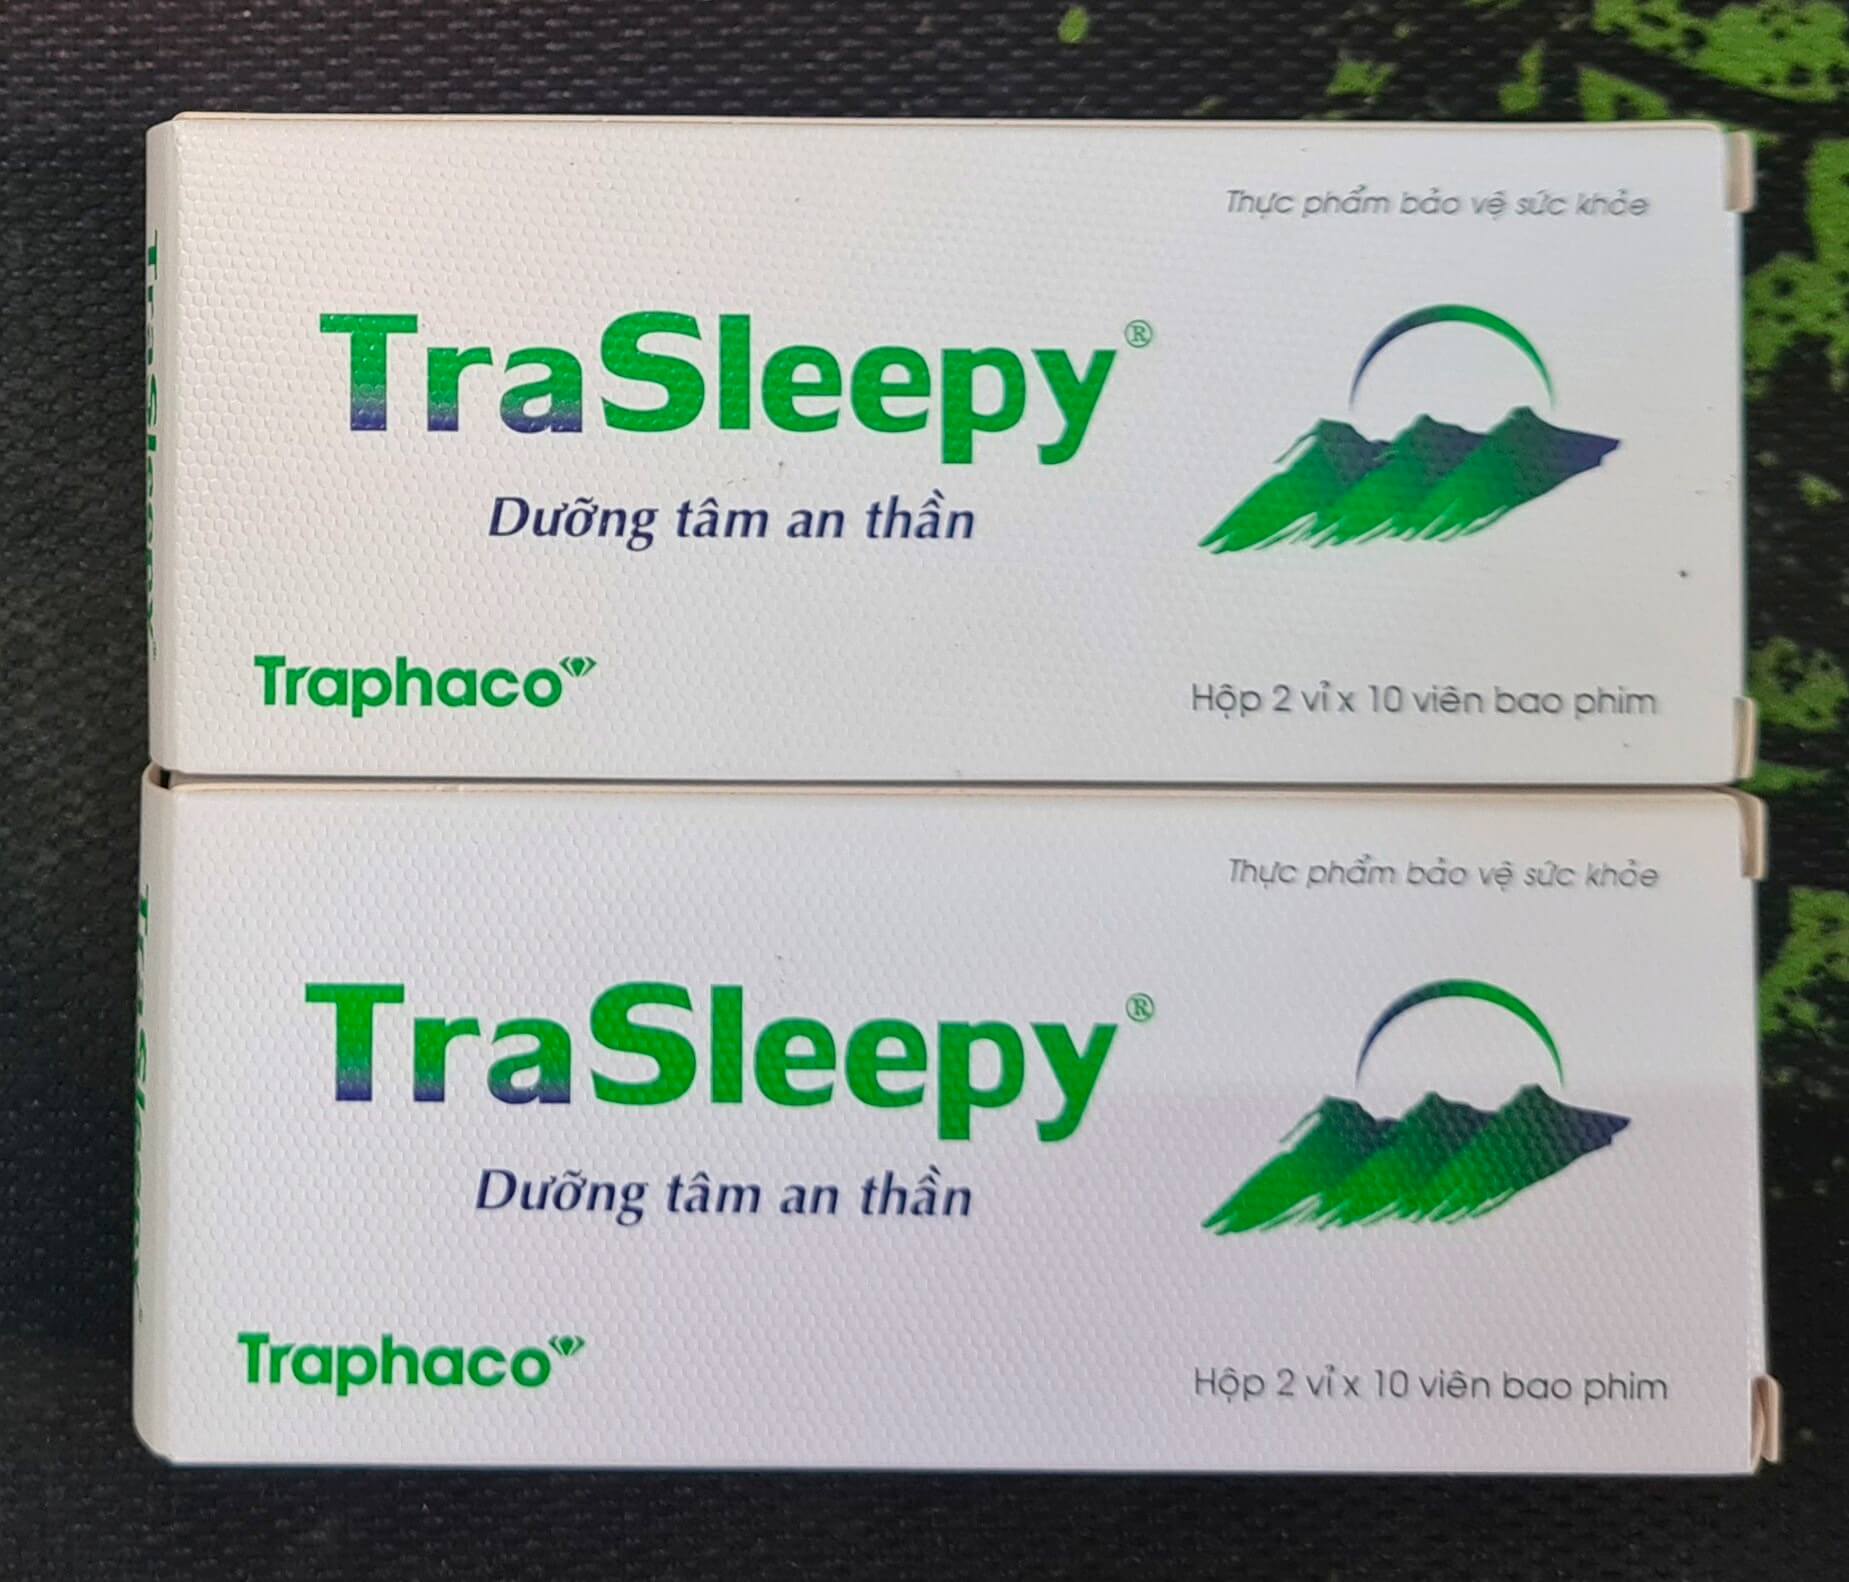 TraSleepy là thuốc gì? Trasleepy có tốt không? hình 9